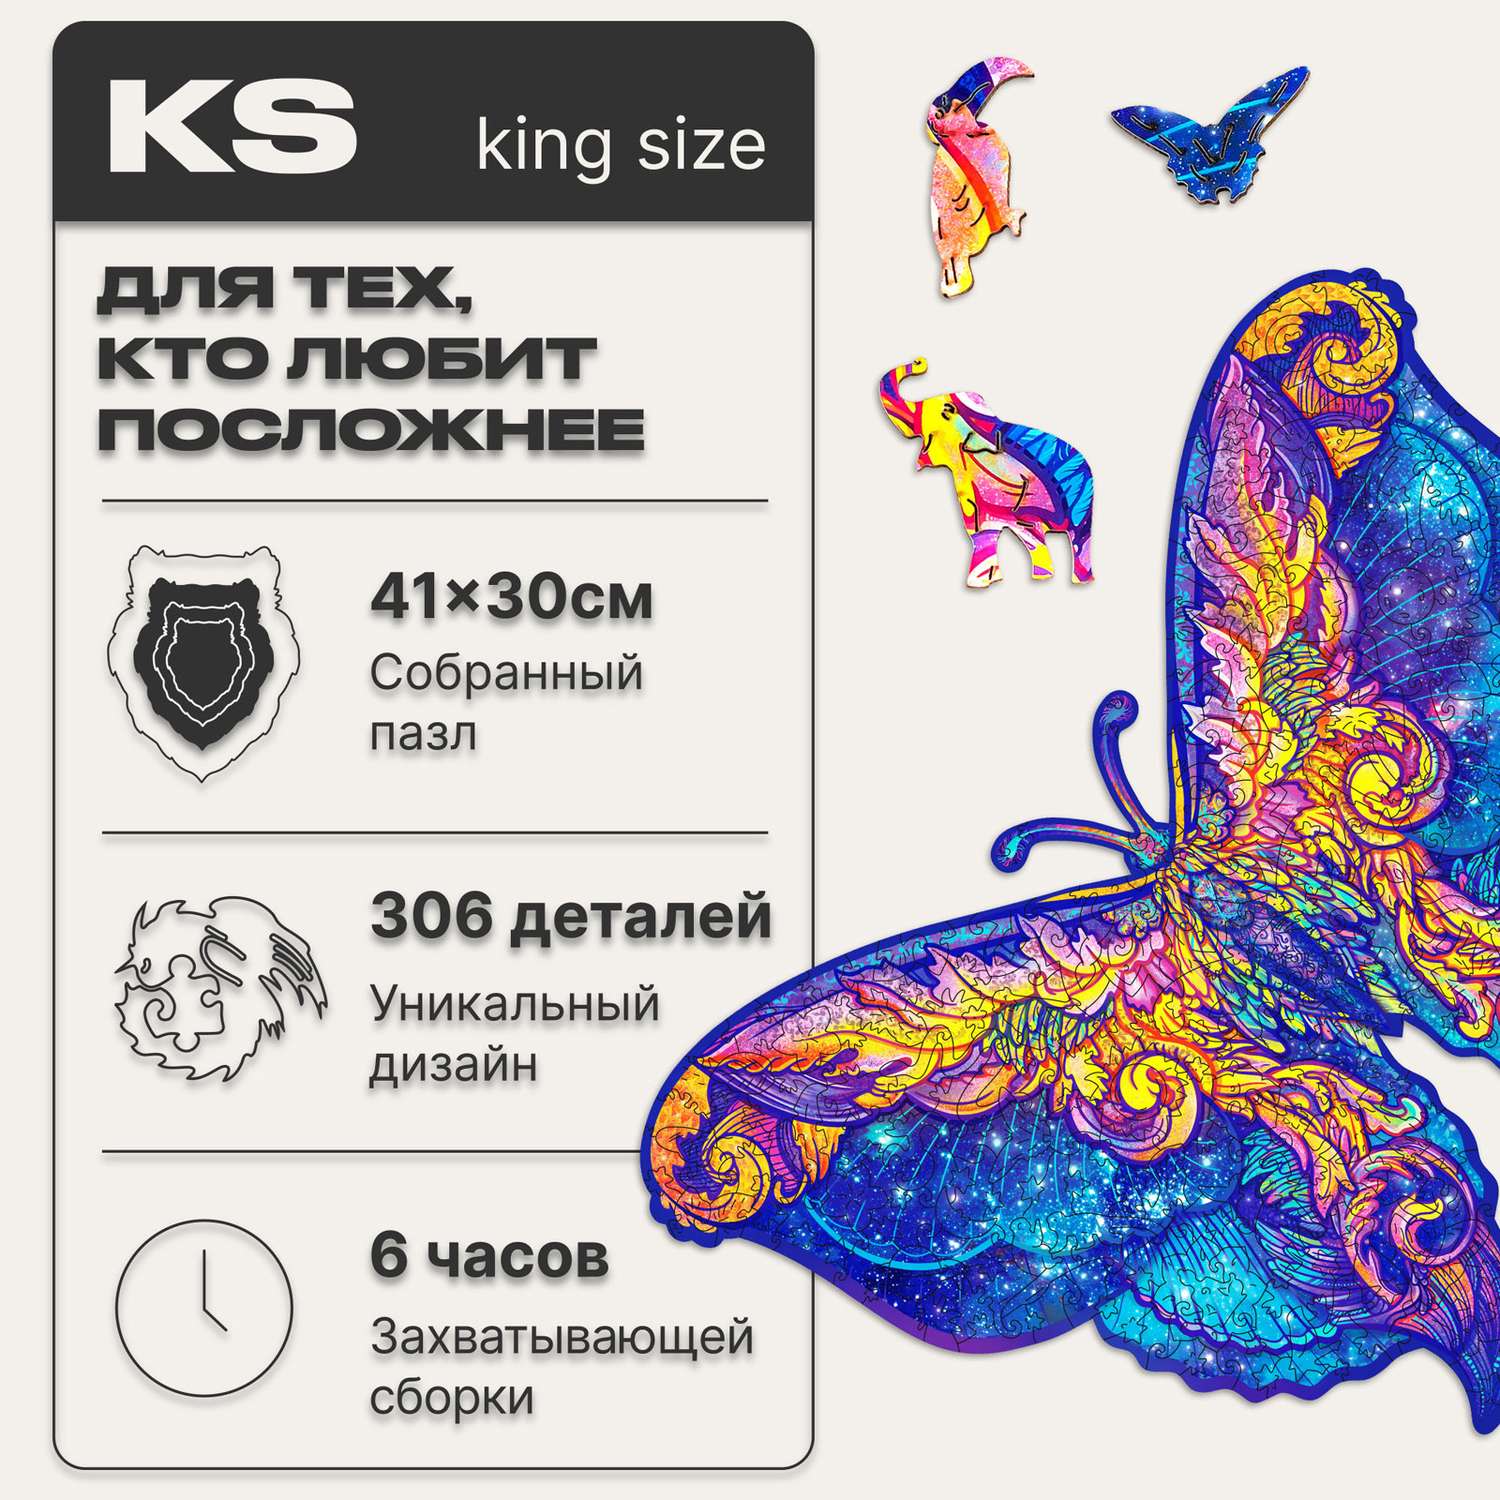 Пазл деревянный UNIDRAGON Межгалактическая Бабочка размер 41x30см 306 деталей - фото 2